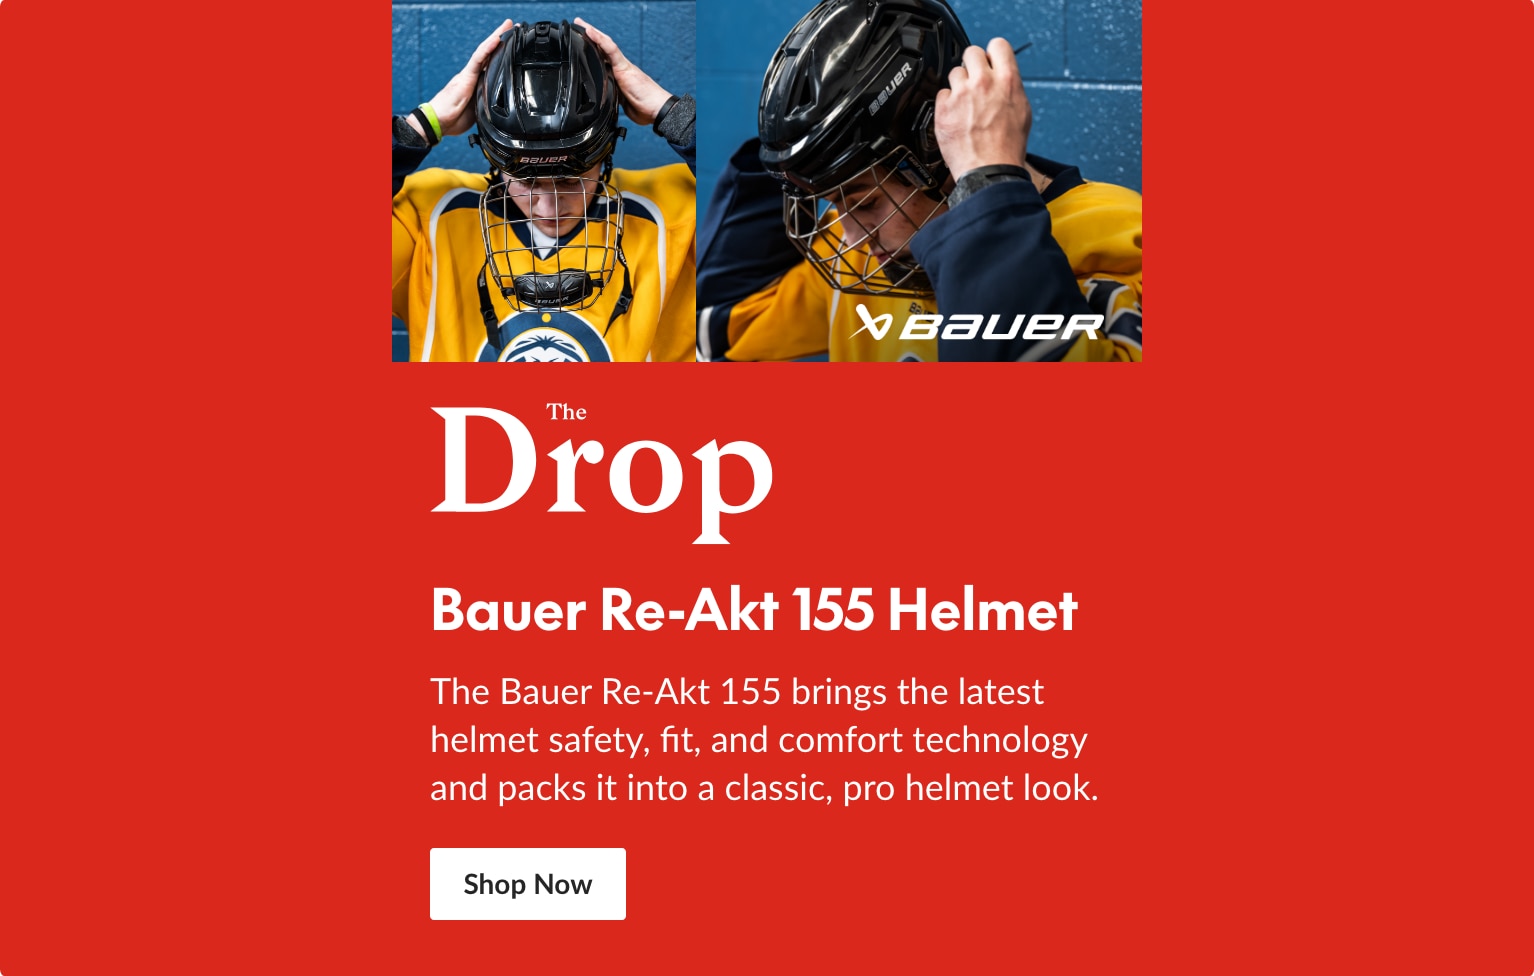 The Drop: Bauer Re-Akt 155